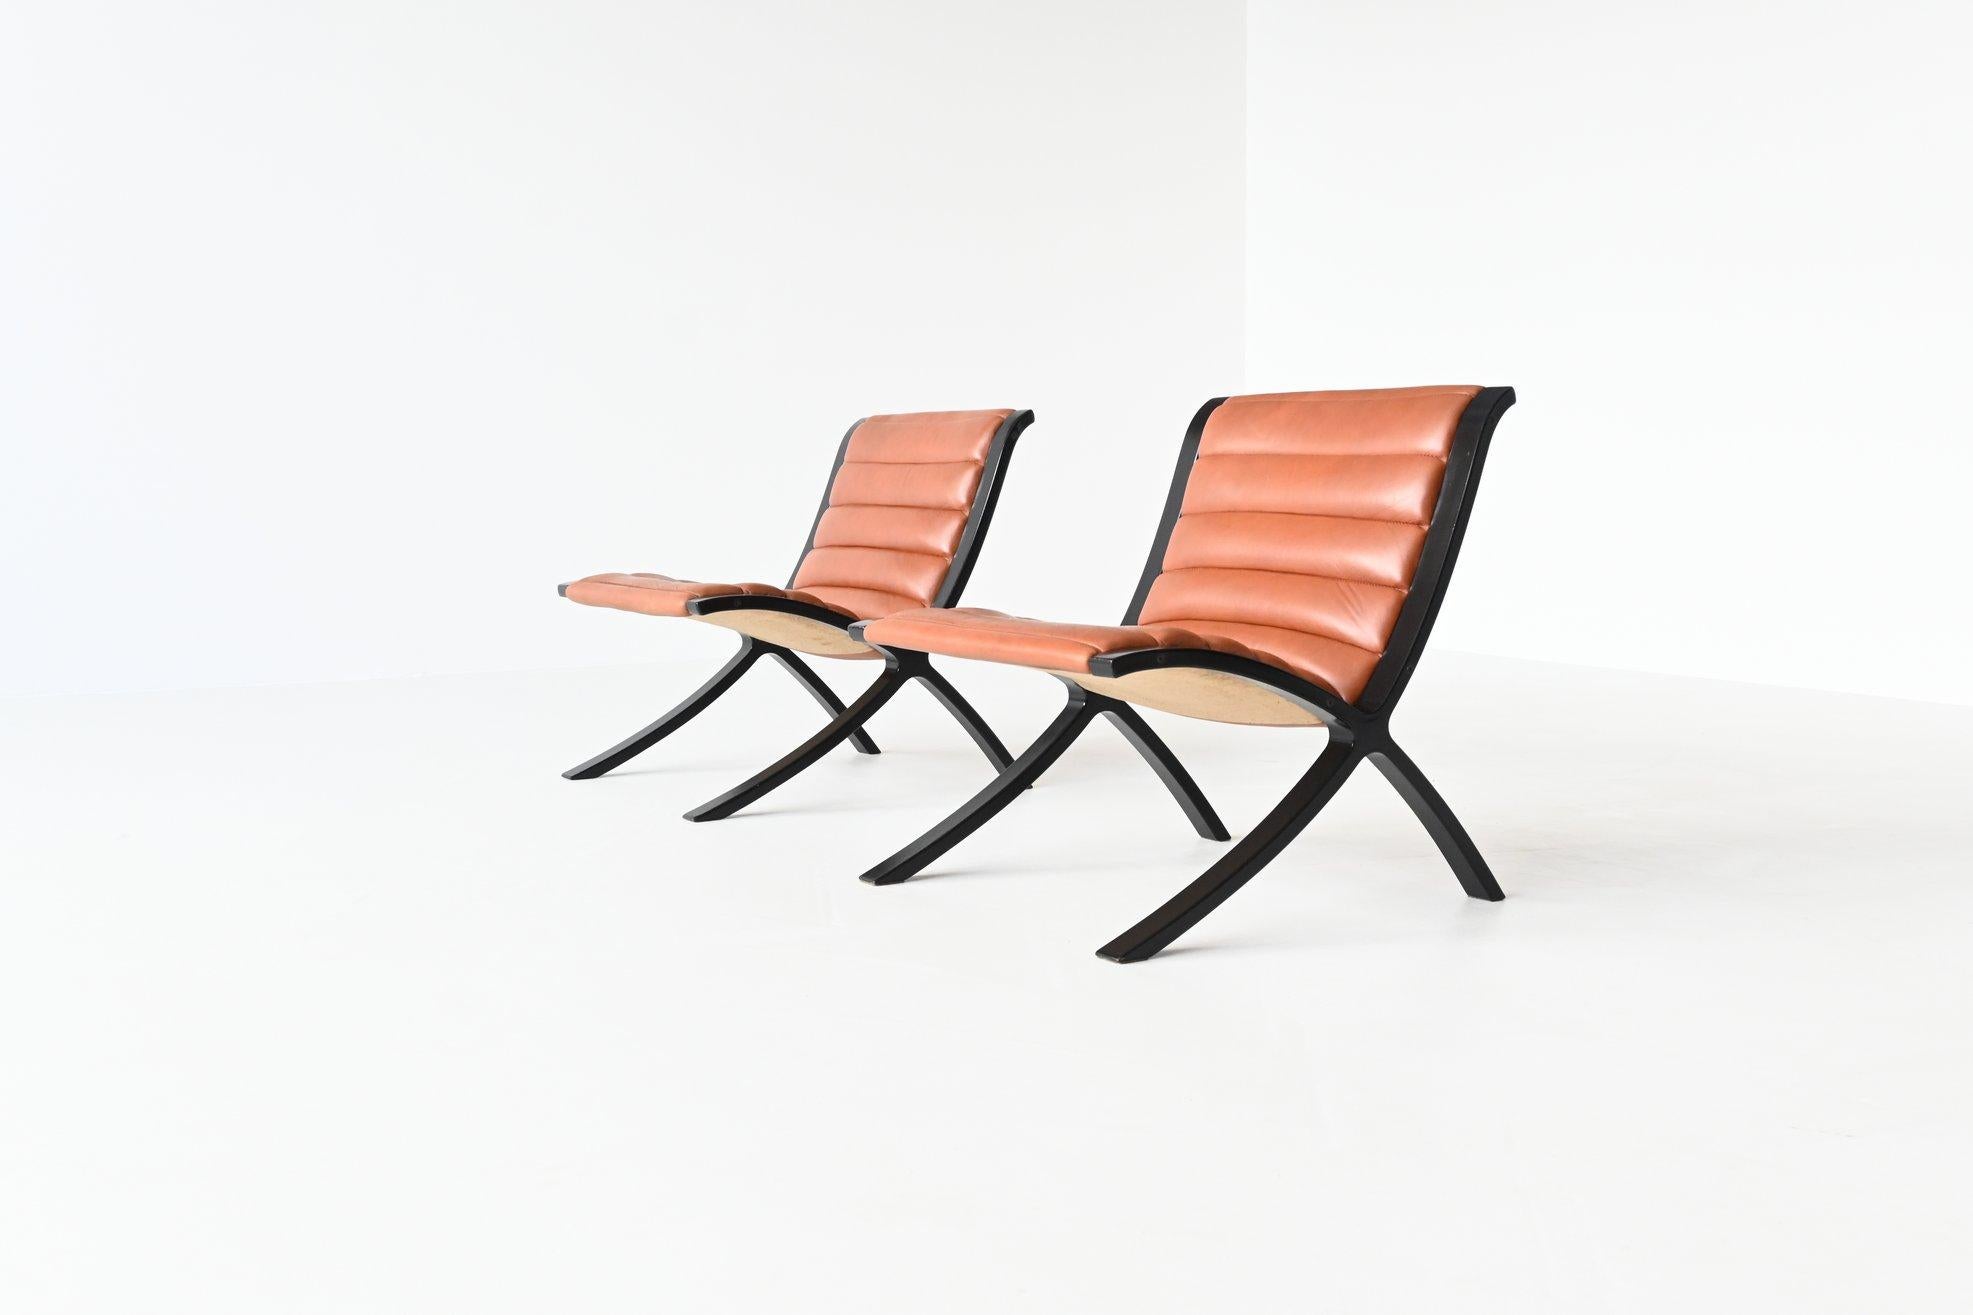 X-Stühle von Peter Hvidt & Orla Molgaard-Nielsen Fritz Hansen, Dänemark, 1979 (Ende des 20. Jahrhunderts)